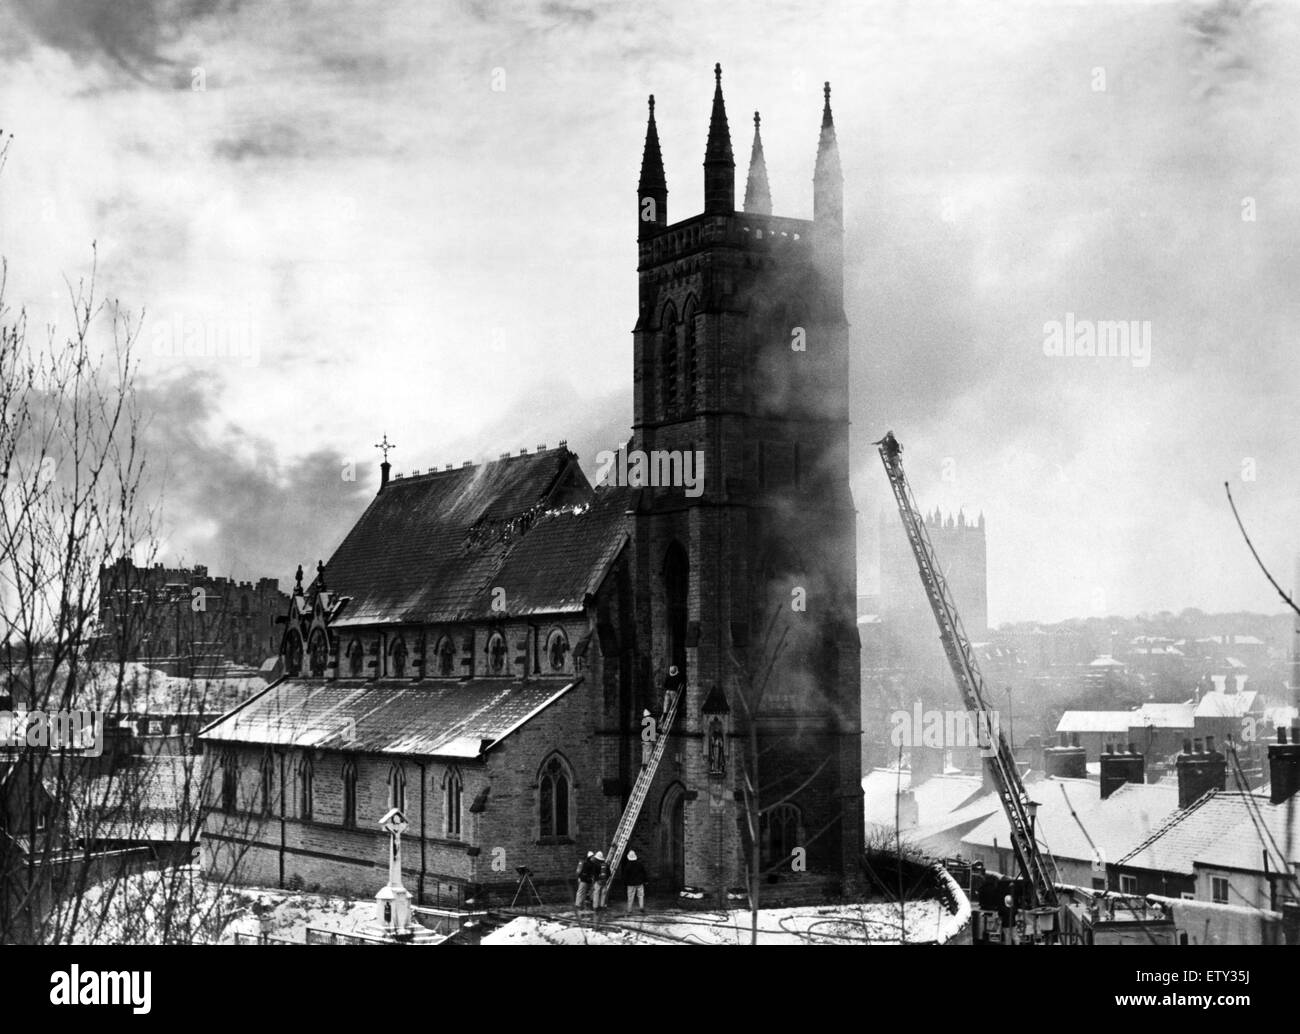 Teams der Feuerwehrleute kämpfen, um St Godric römisch-katholische Kirche in Durham City zu retten, von Flammen verschlungen wird. Das Feuer wurde entdeckt, als Rauch aus dem Turm der Kirche gesehen wurde. Innerhalb von Minuten war das ganze Dach in Flammen. Sechs Feuerlöschfahrzeuge Stockfoto